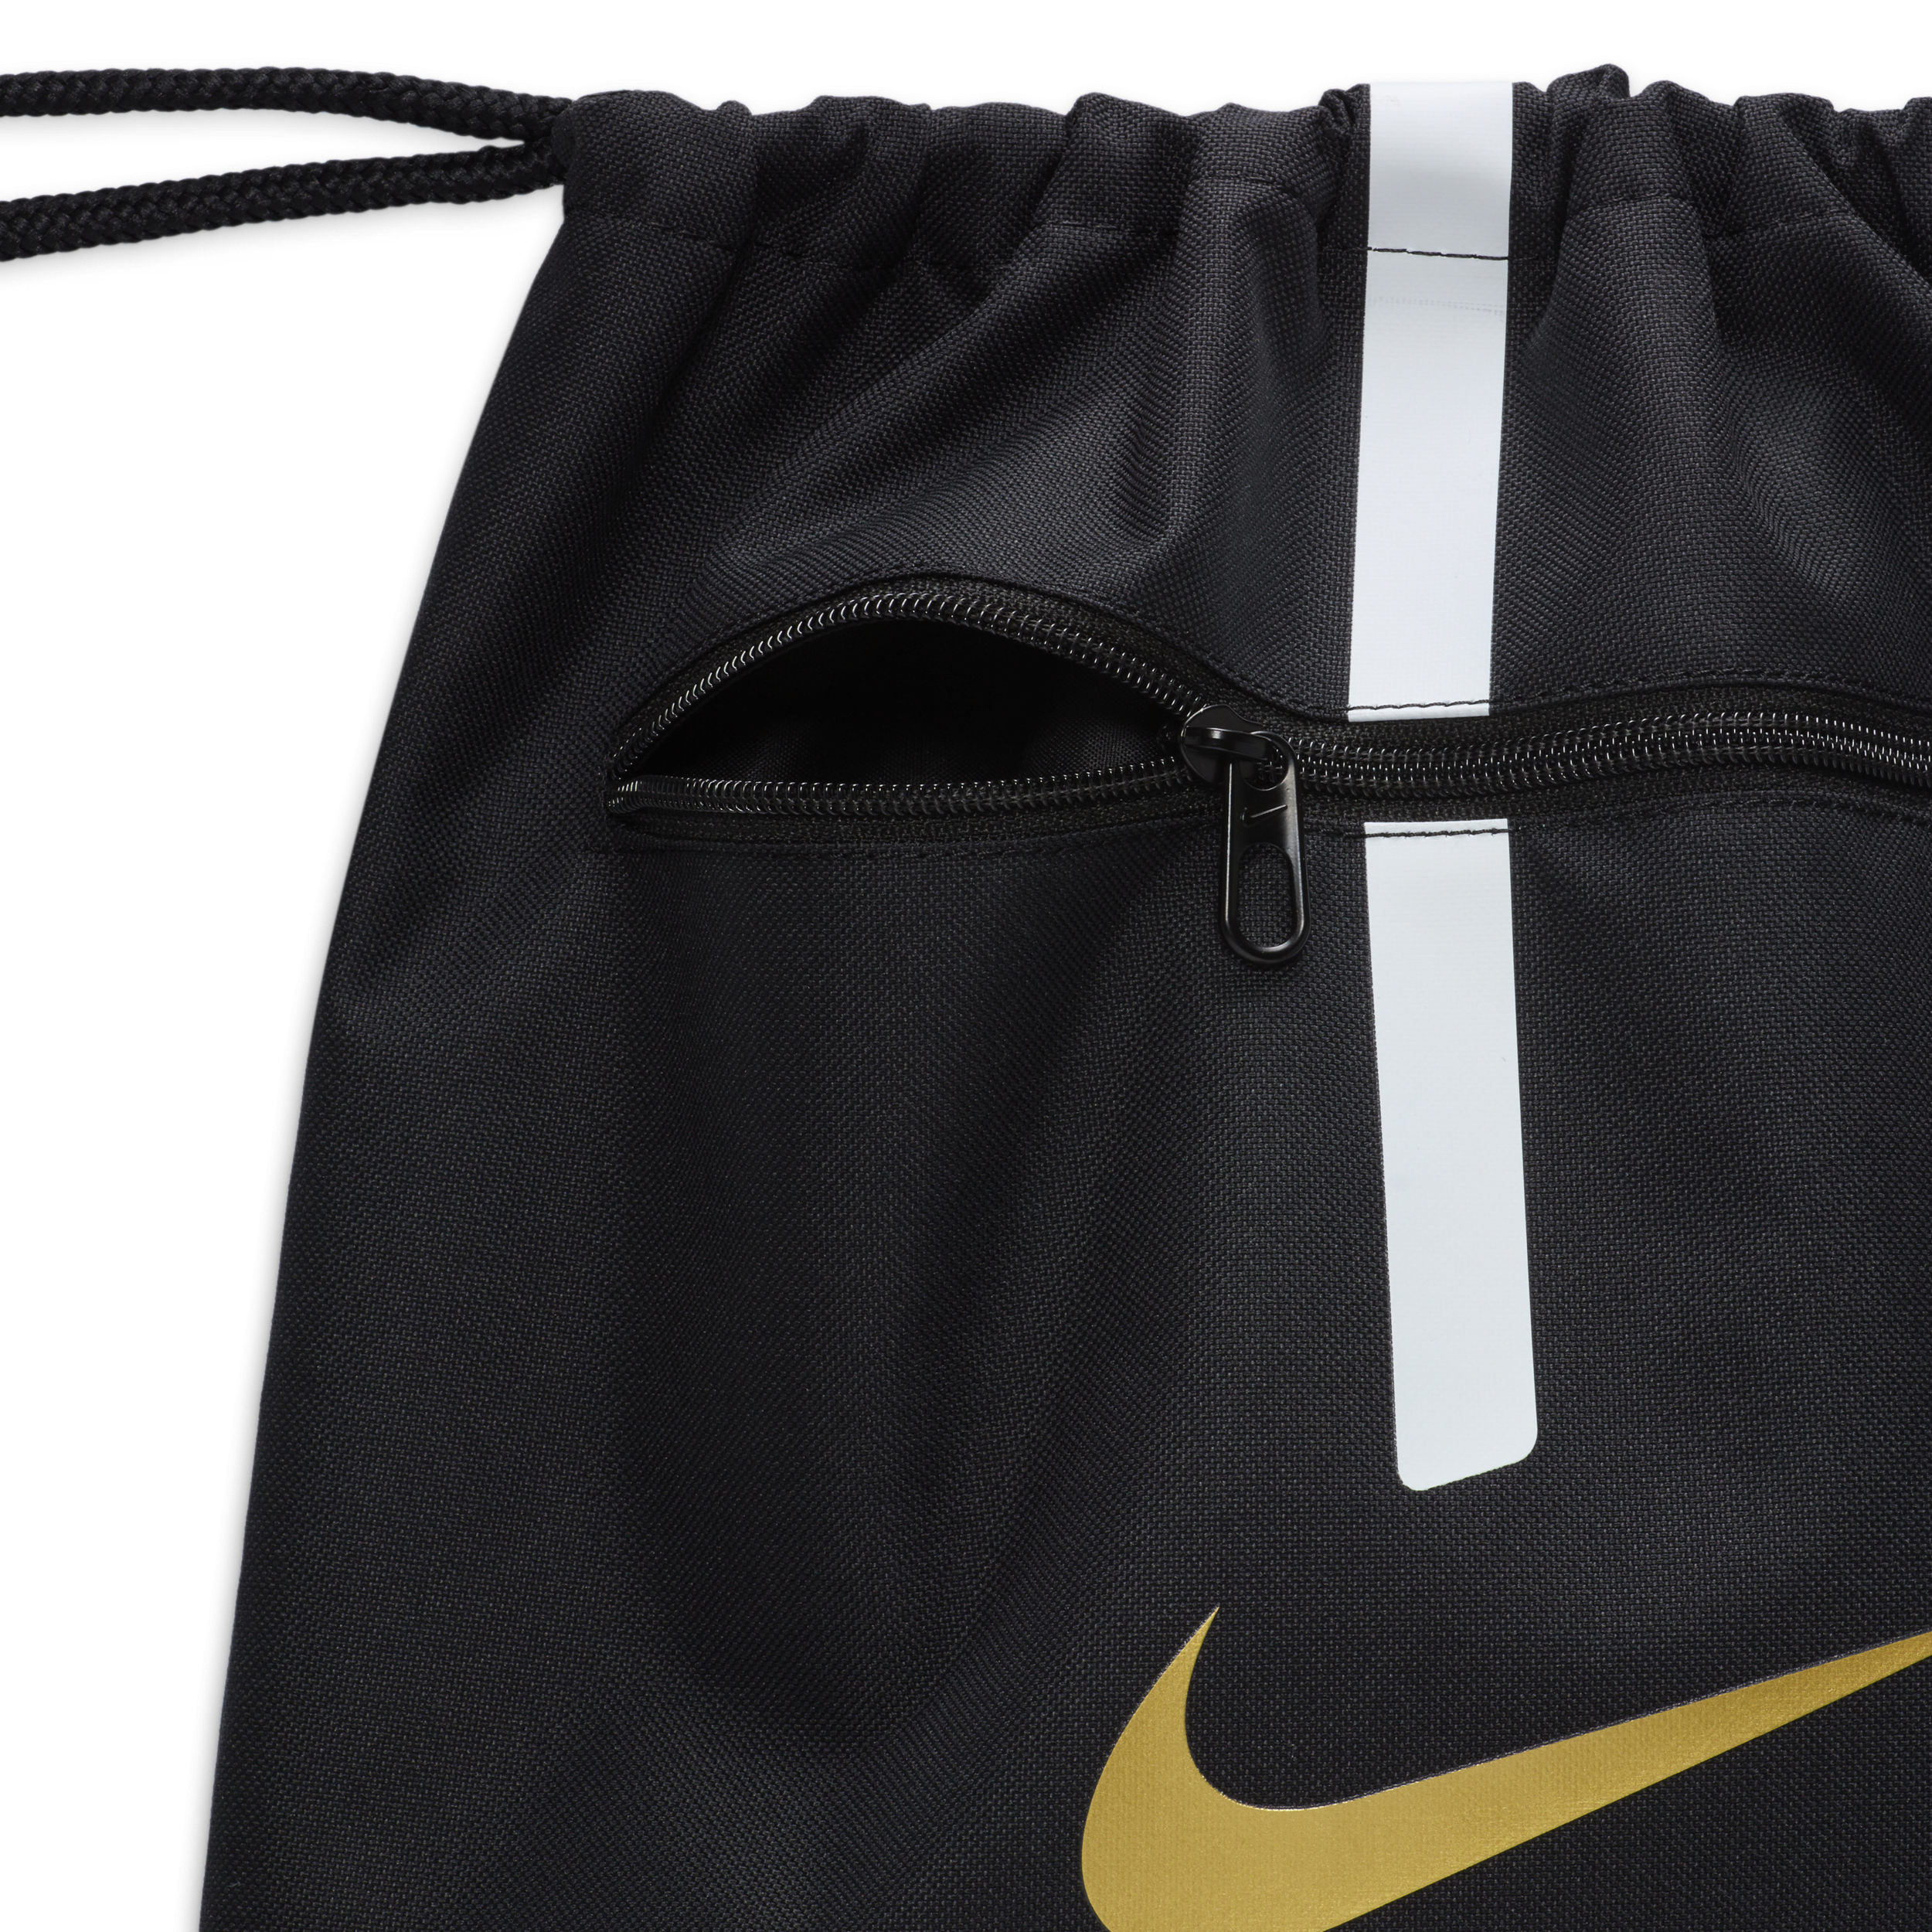 Nike Academy Gymtas voor voetbal (18 liter) Zwart